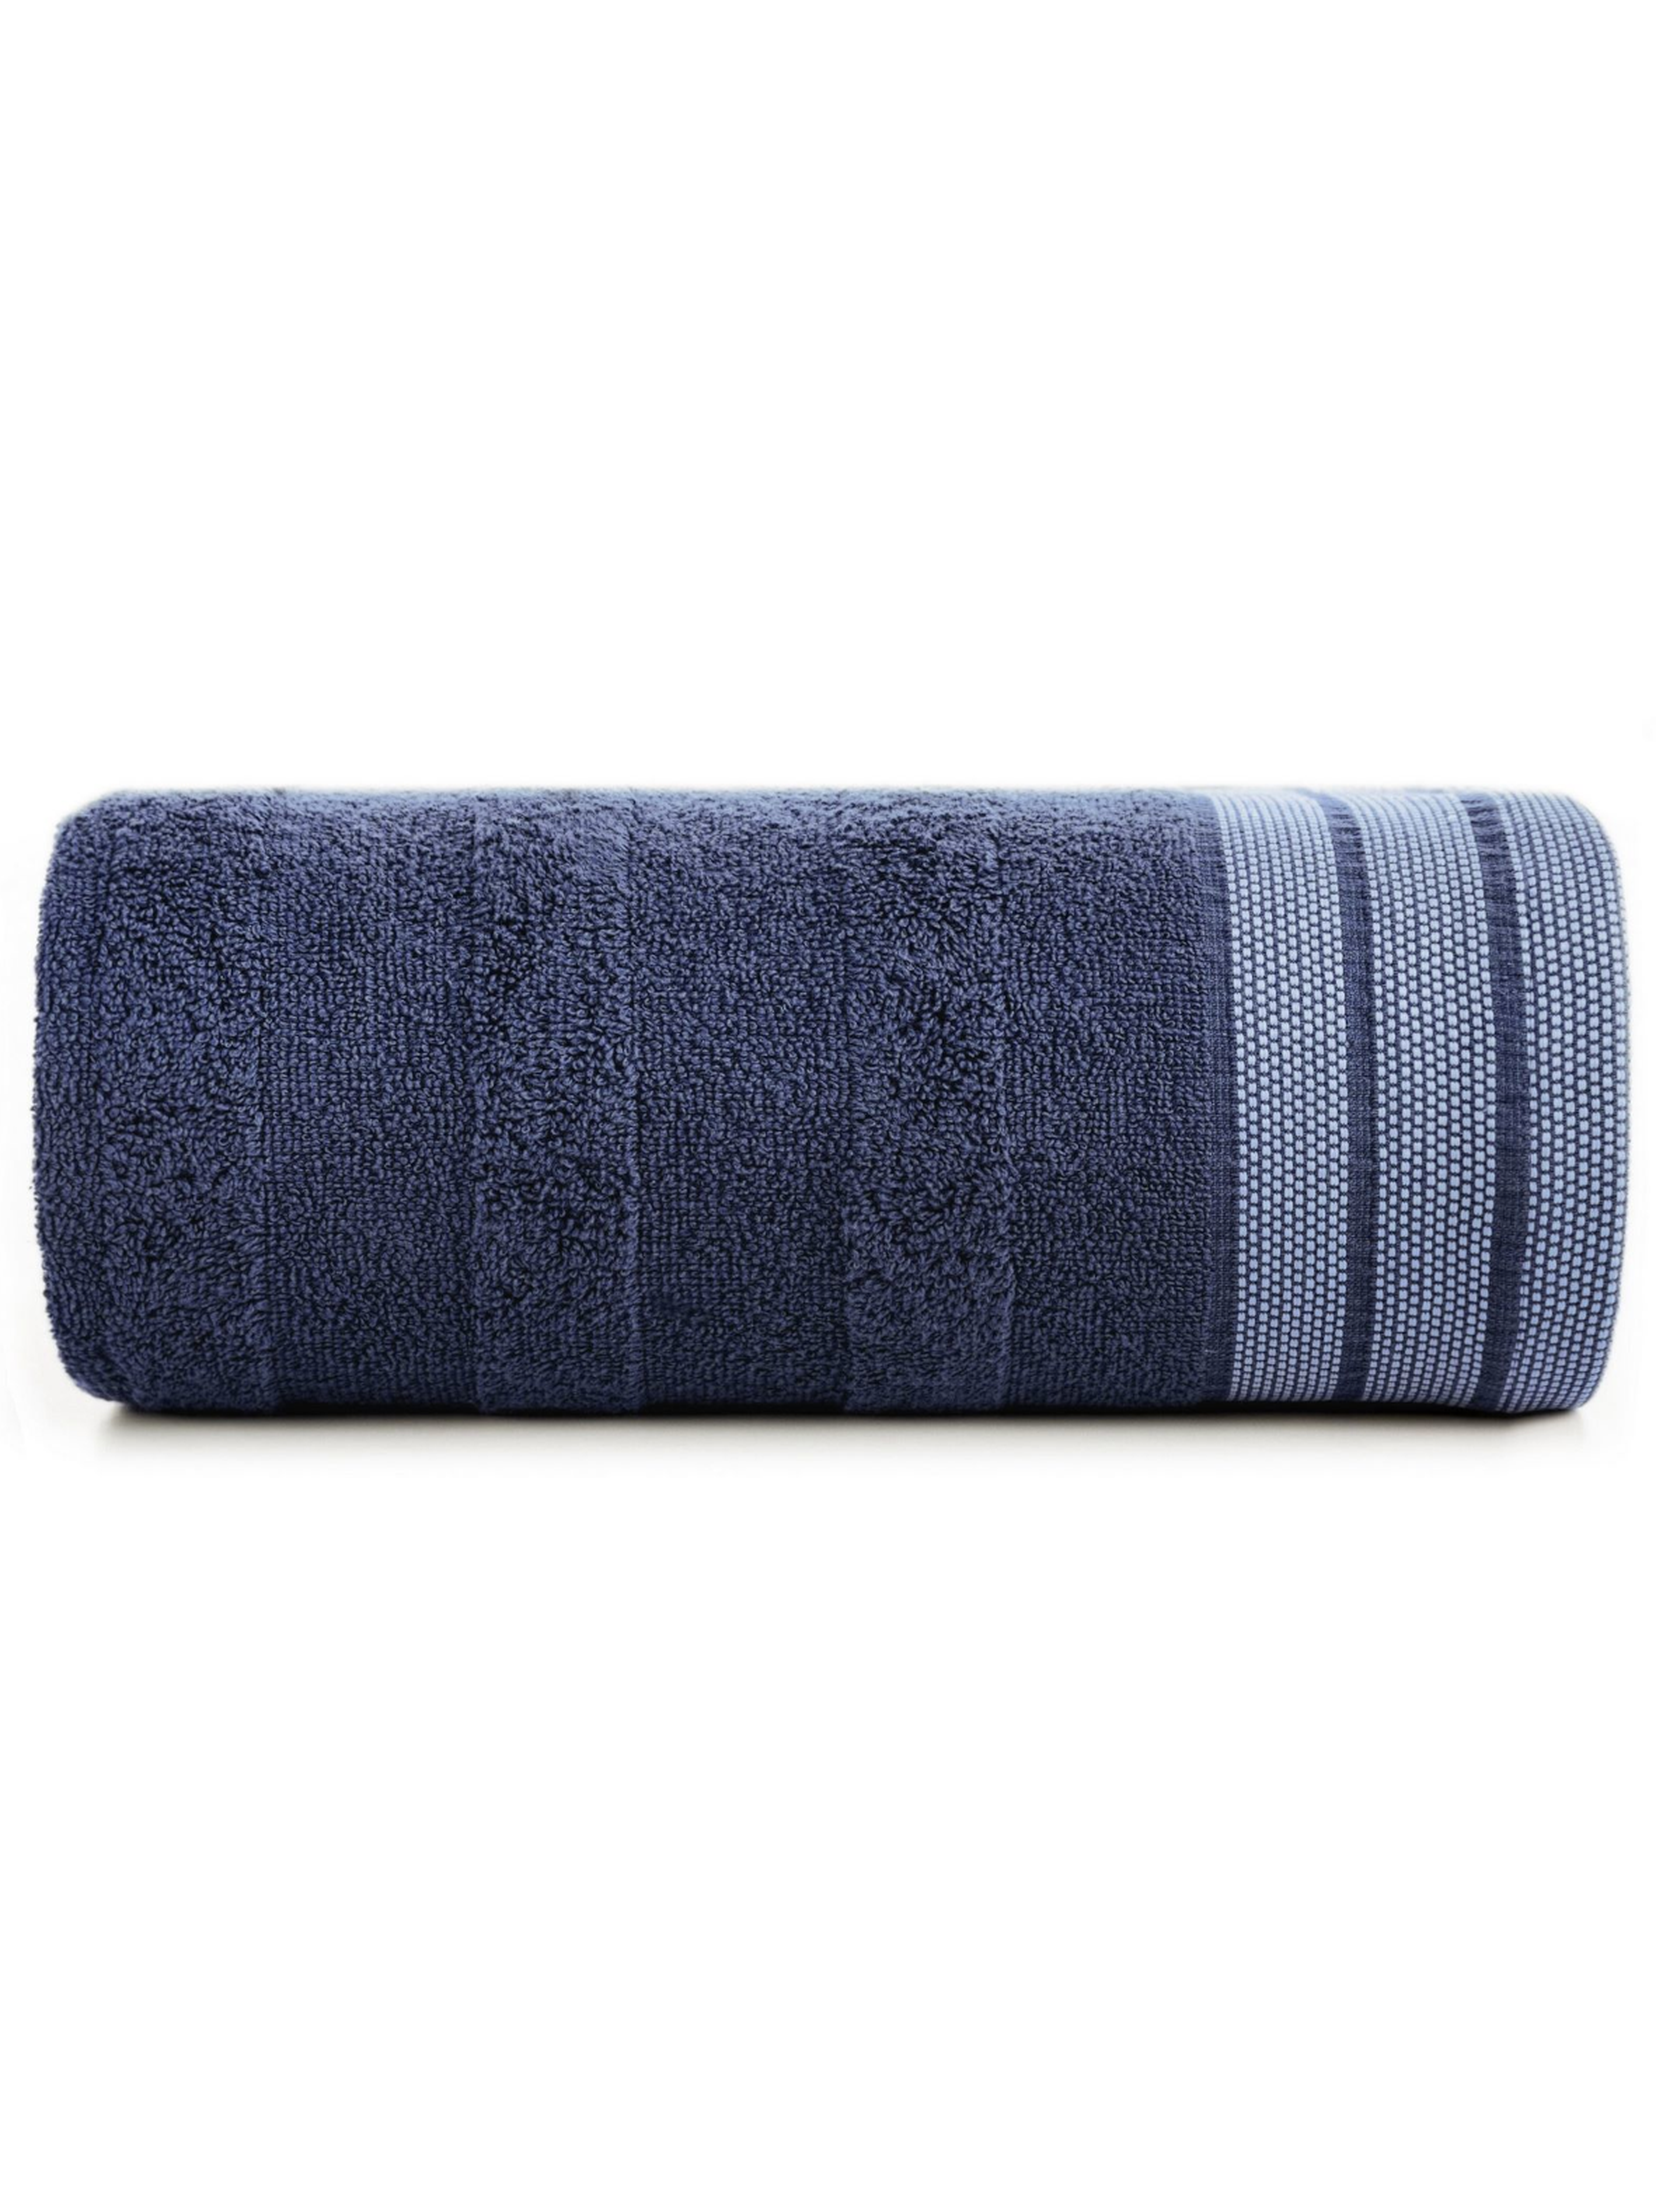 Granatowy ręcznik zdobiony pasami 70x140 cm